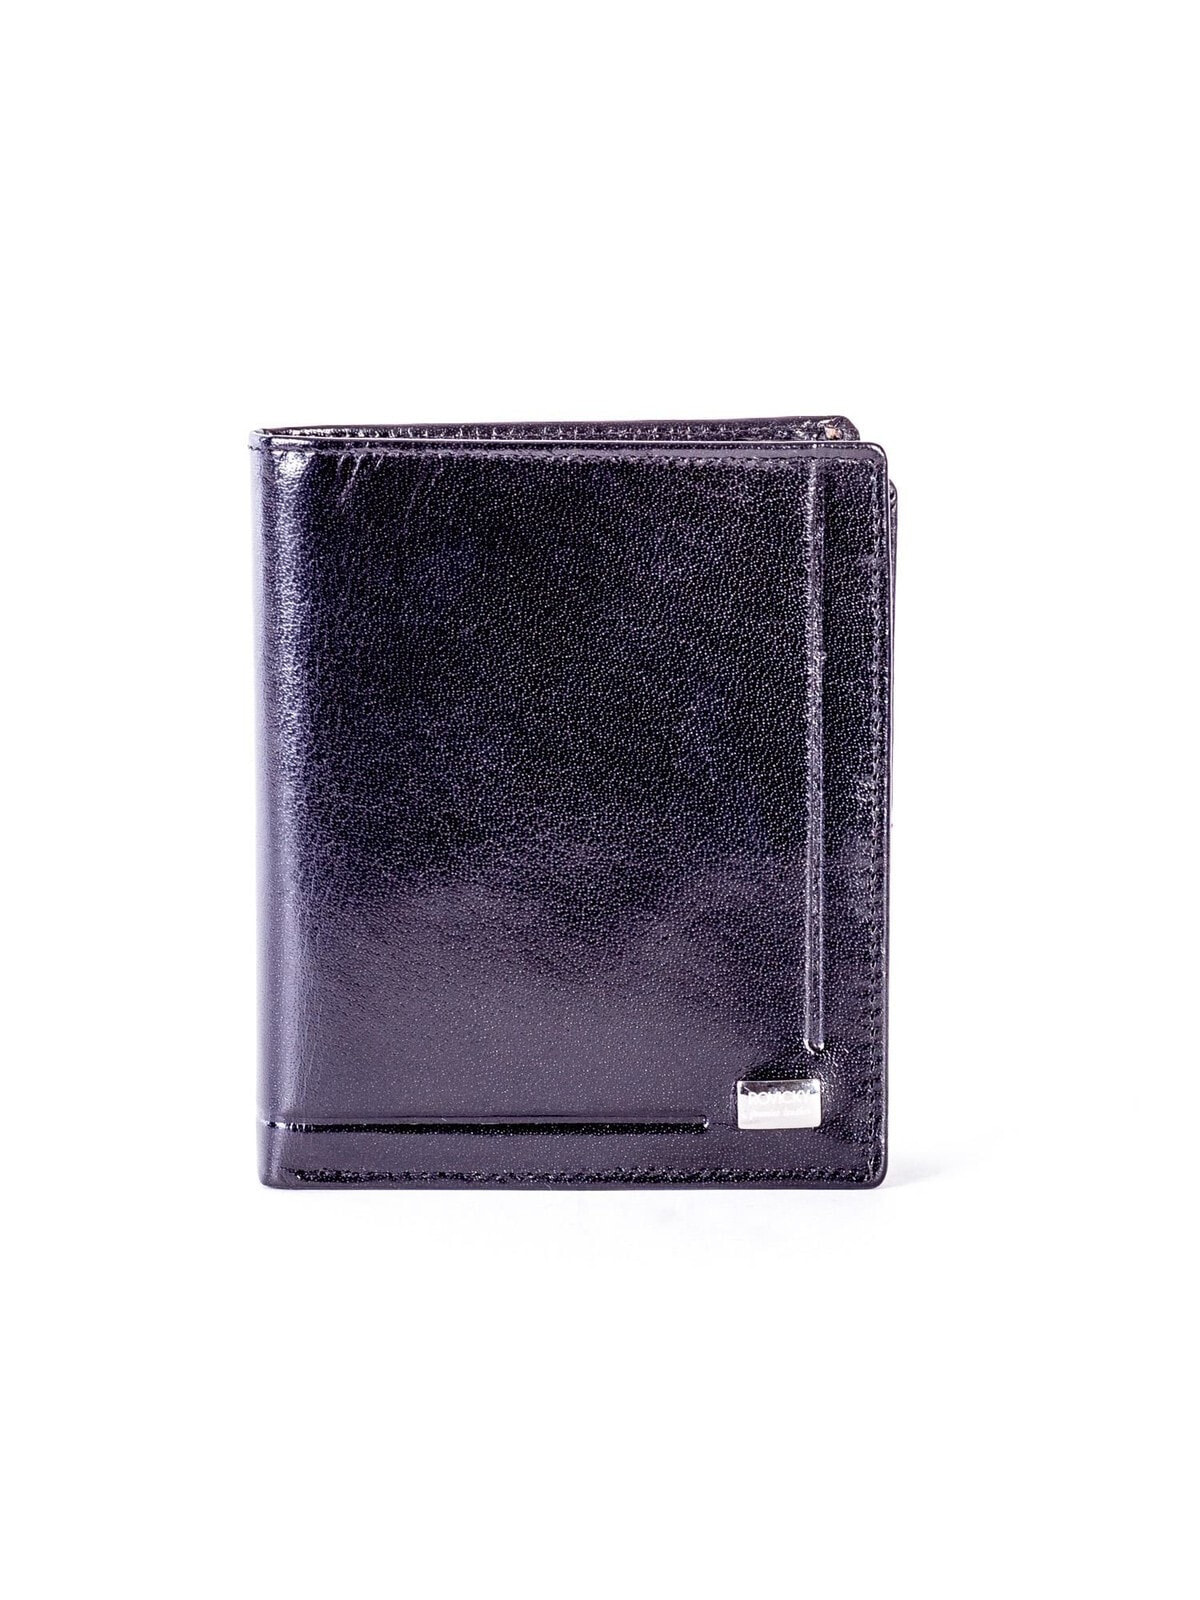 Мужское портмоне кожаное черное вертикальное без застежки Portfel-CE-PR-PC-106-BAR.13-czarny 	Factory Price